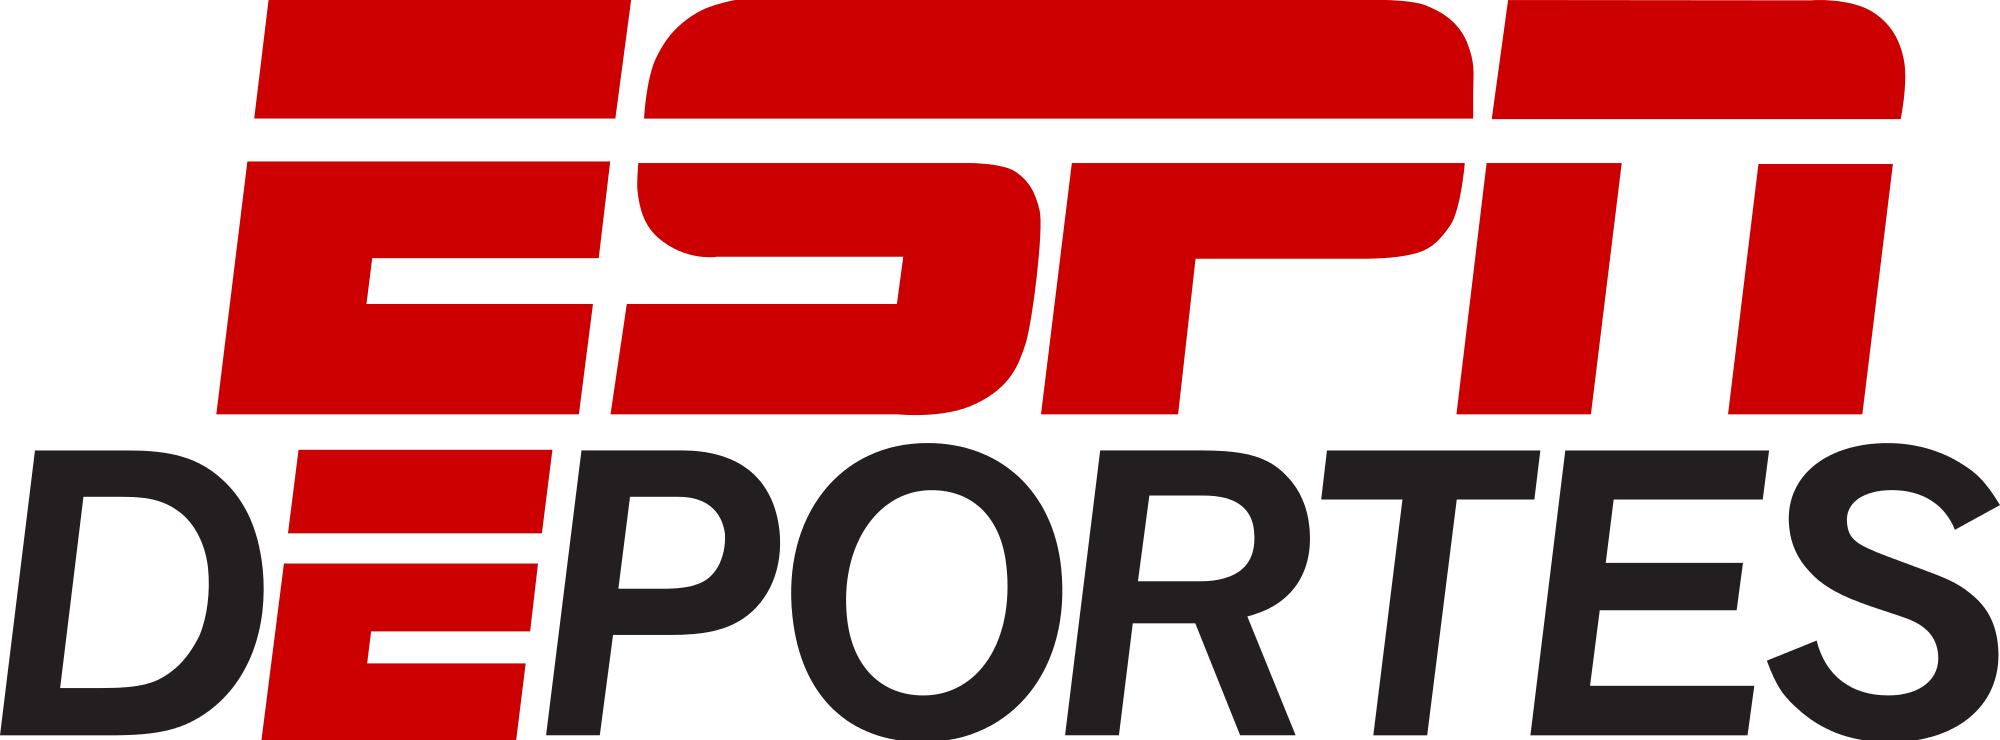 ESPN Sports Logo - Espn deportes.svg